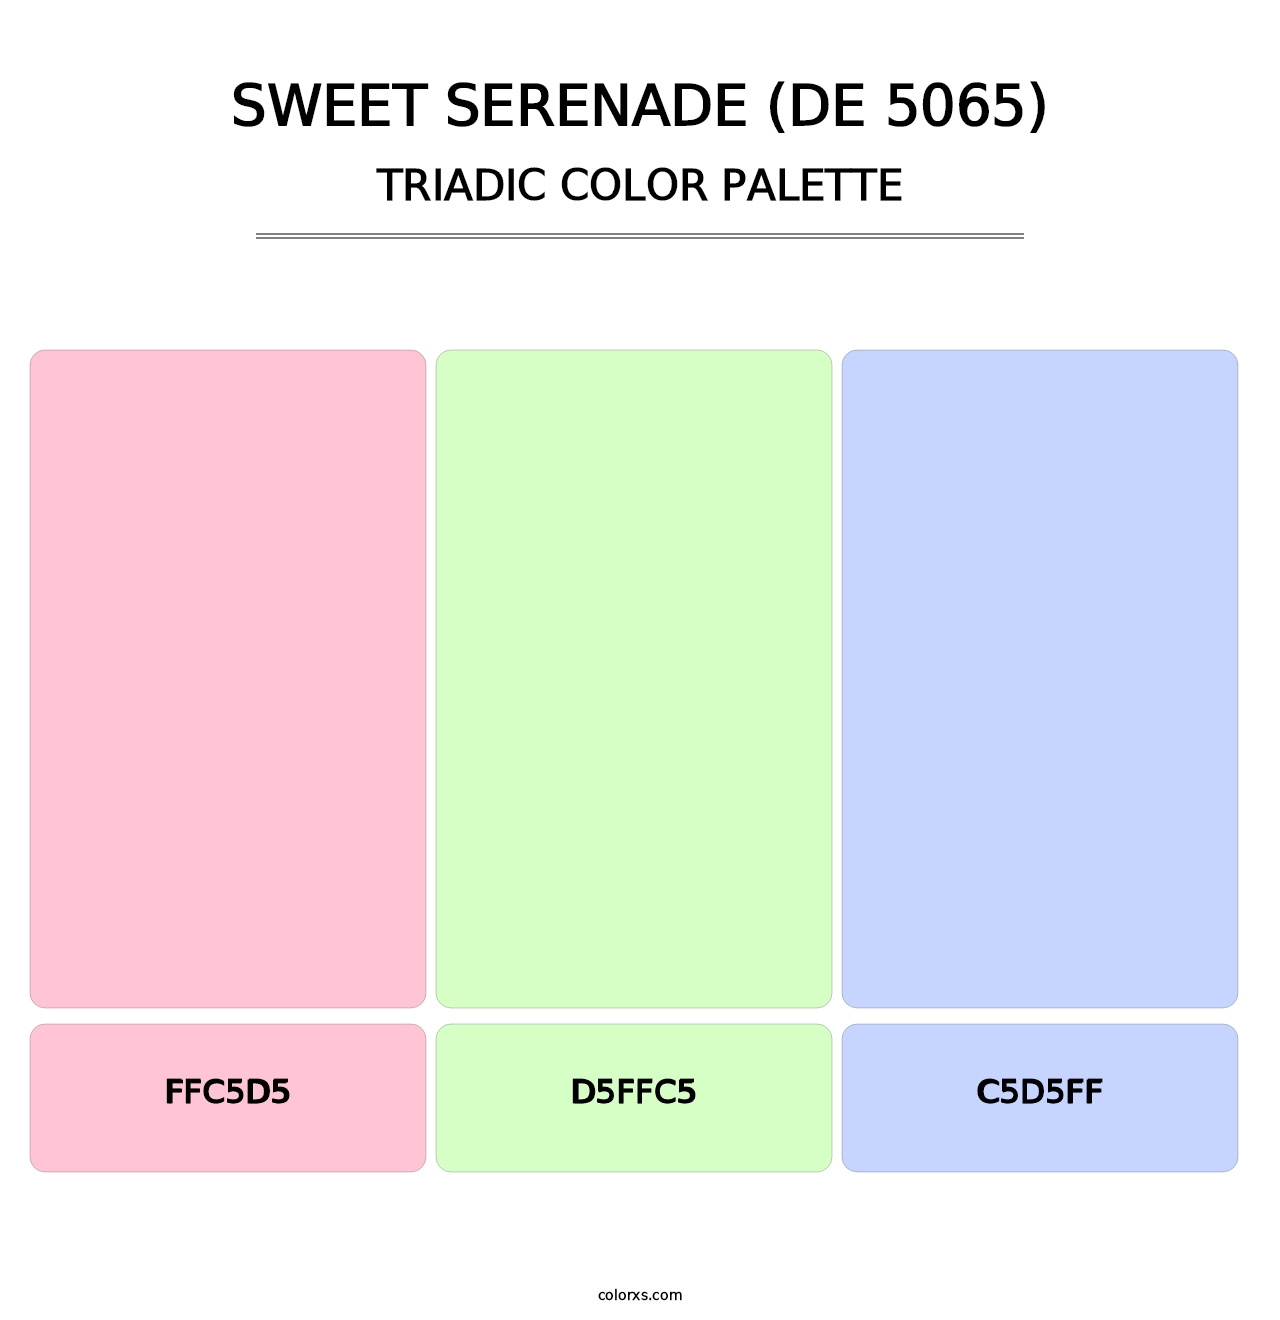 Sweet Serenade (DE 5065) - Triadic Color Palette